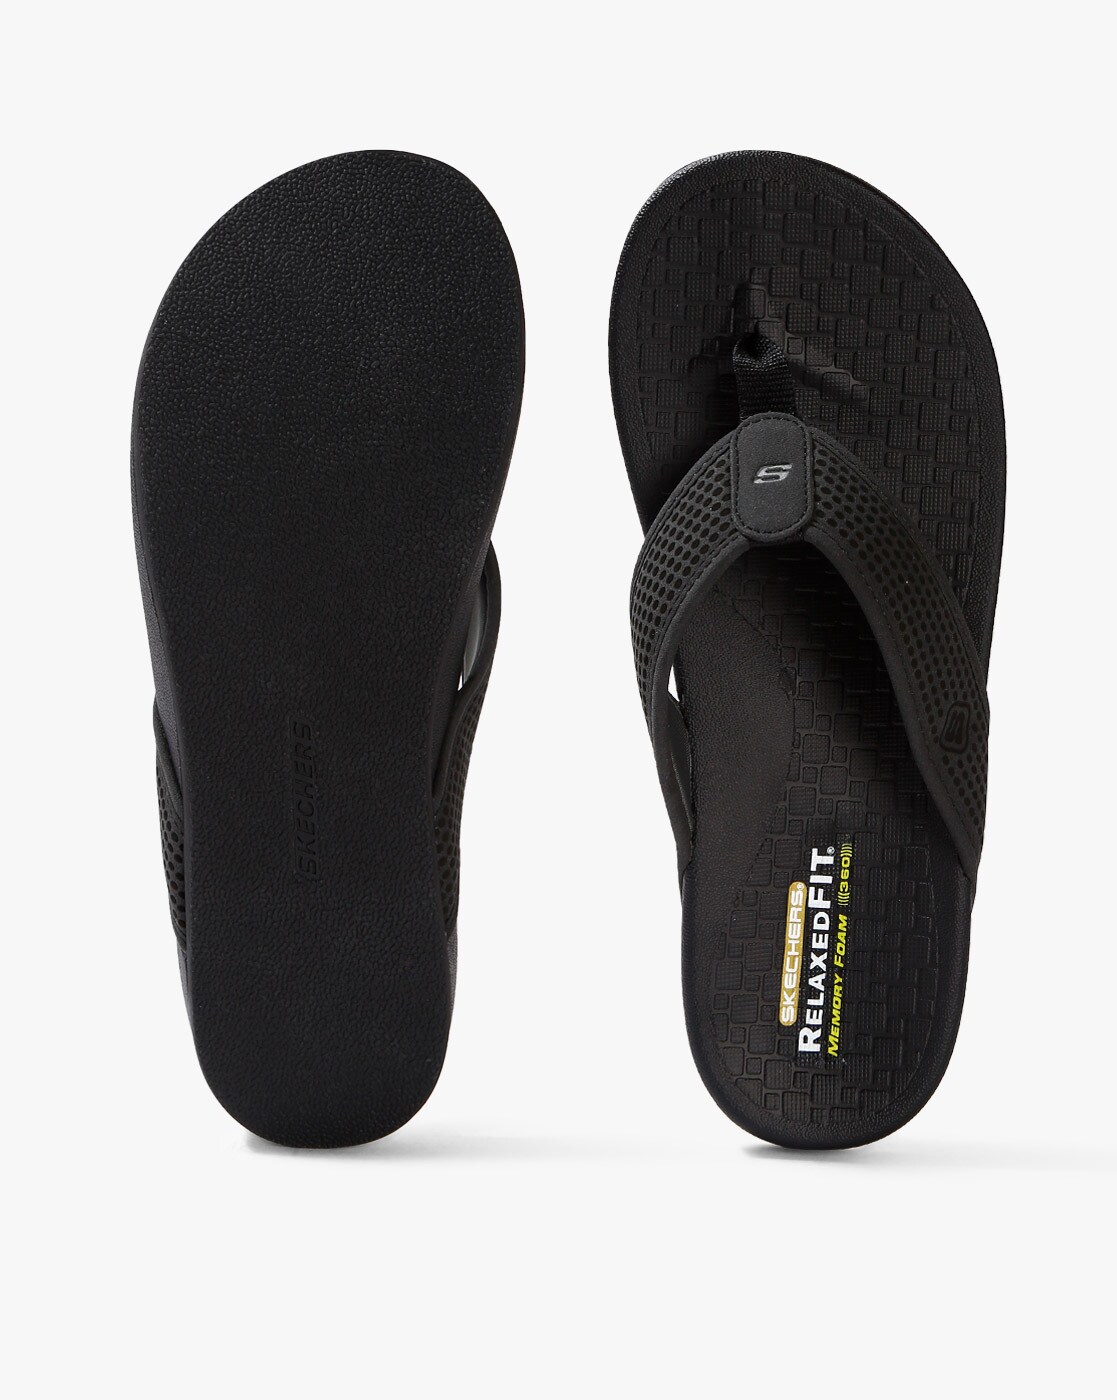 men's skechers relaxed fit memory foam 360 sandals